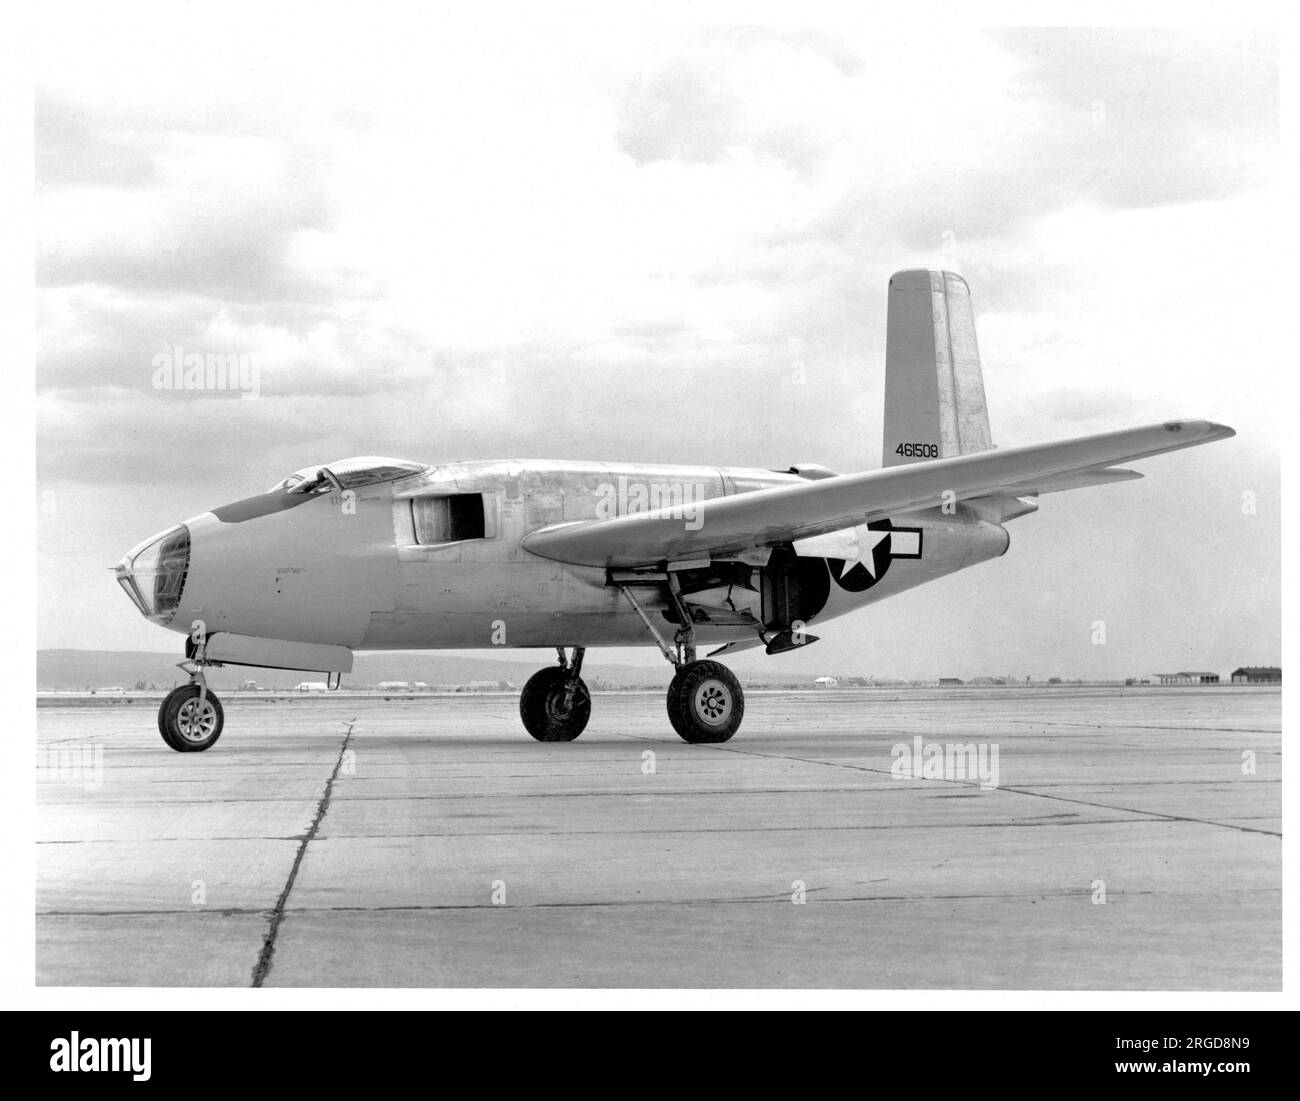 United Sates Air Force - Douglas XB-43 44-61508, primo prototipo prodotto utilizzando il test statico XB-42 Mixmaster, visto alla Muroc Army Air base (Edwards AFB / Armstrong Flight Research Center). Foto Stock